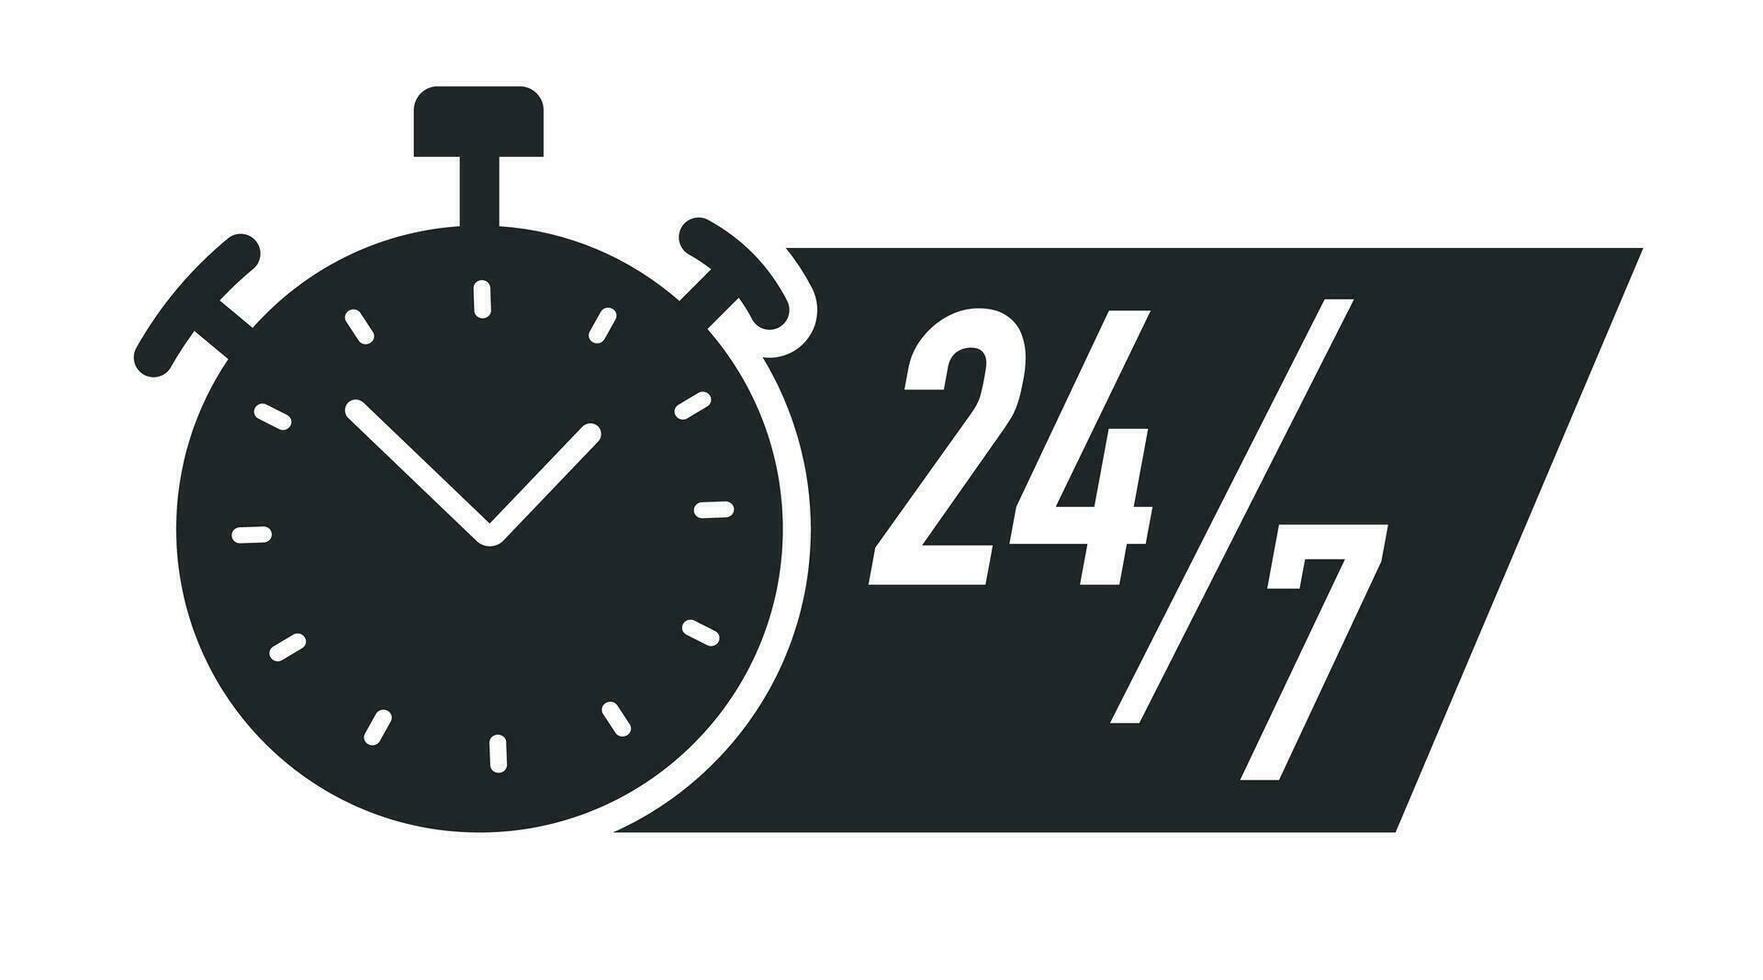 24 7 hours timer vector symbol black color